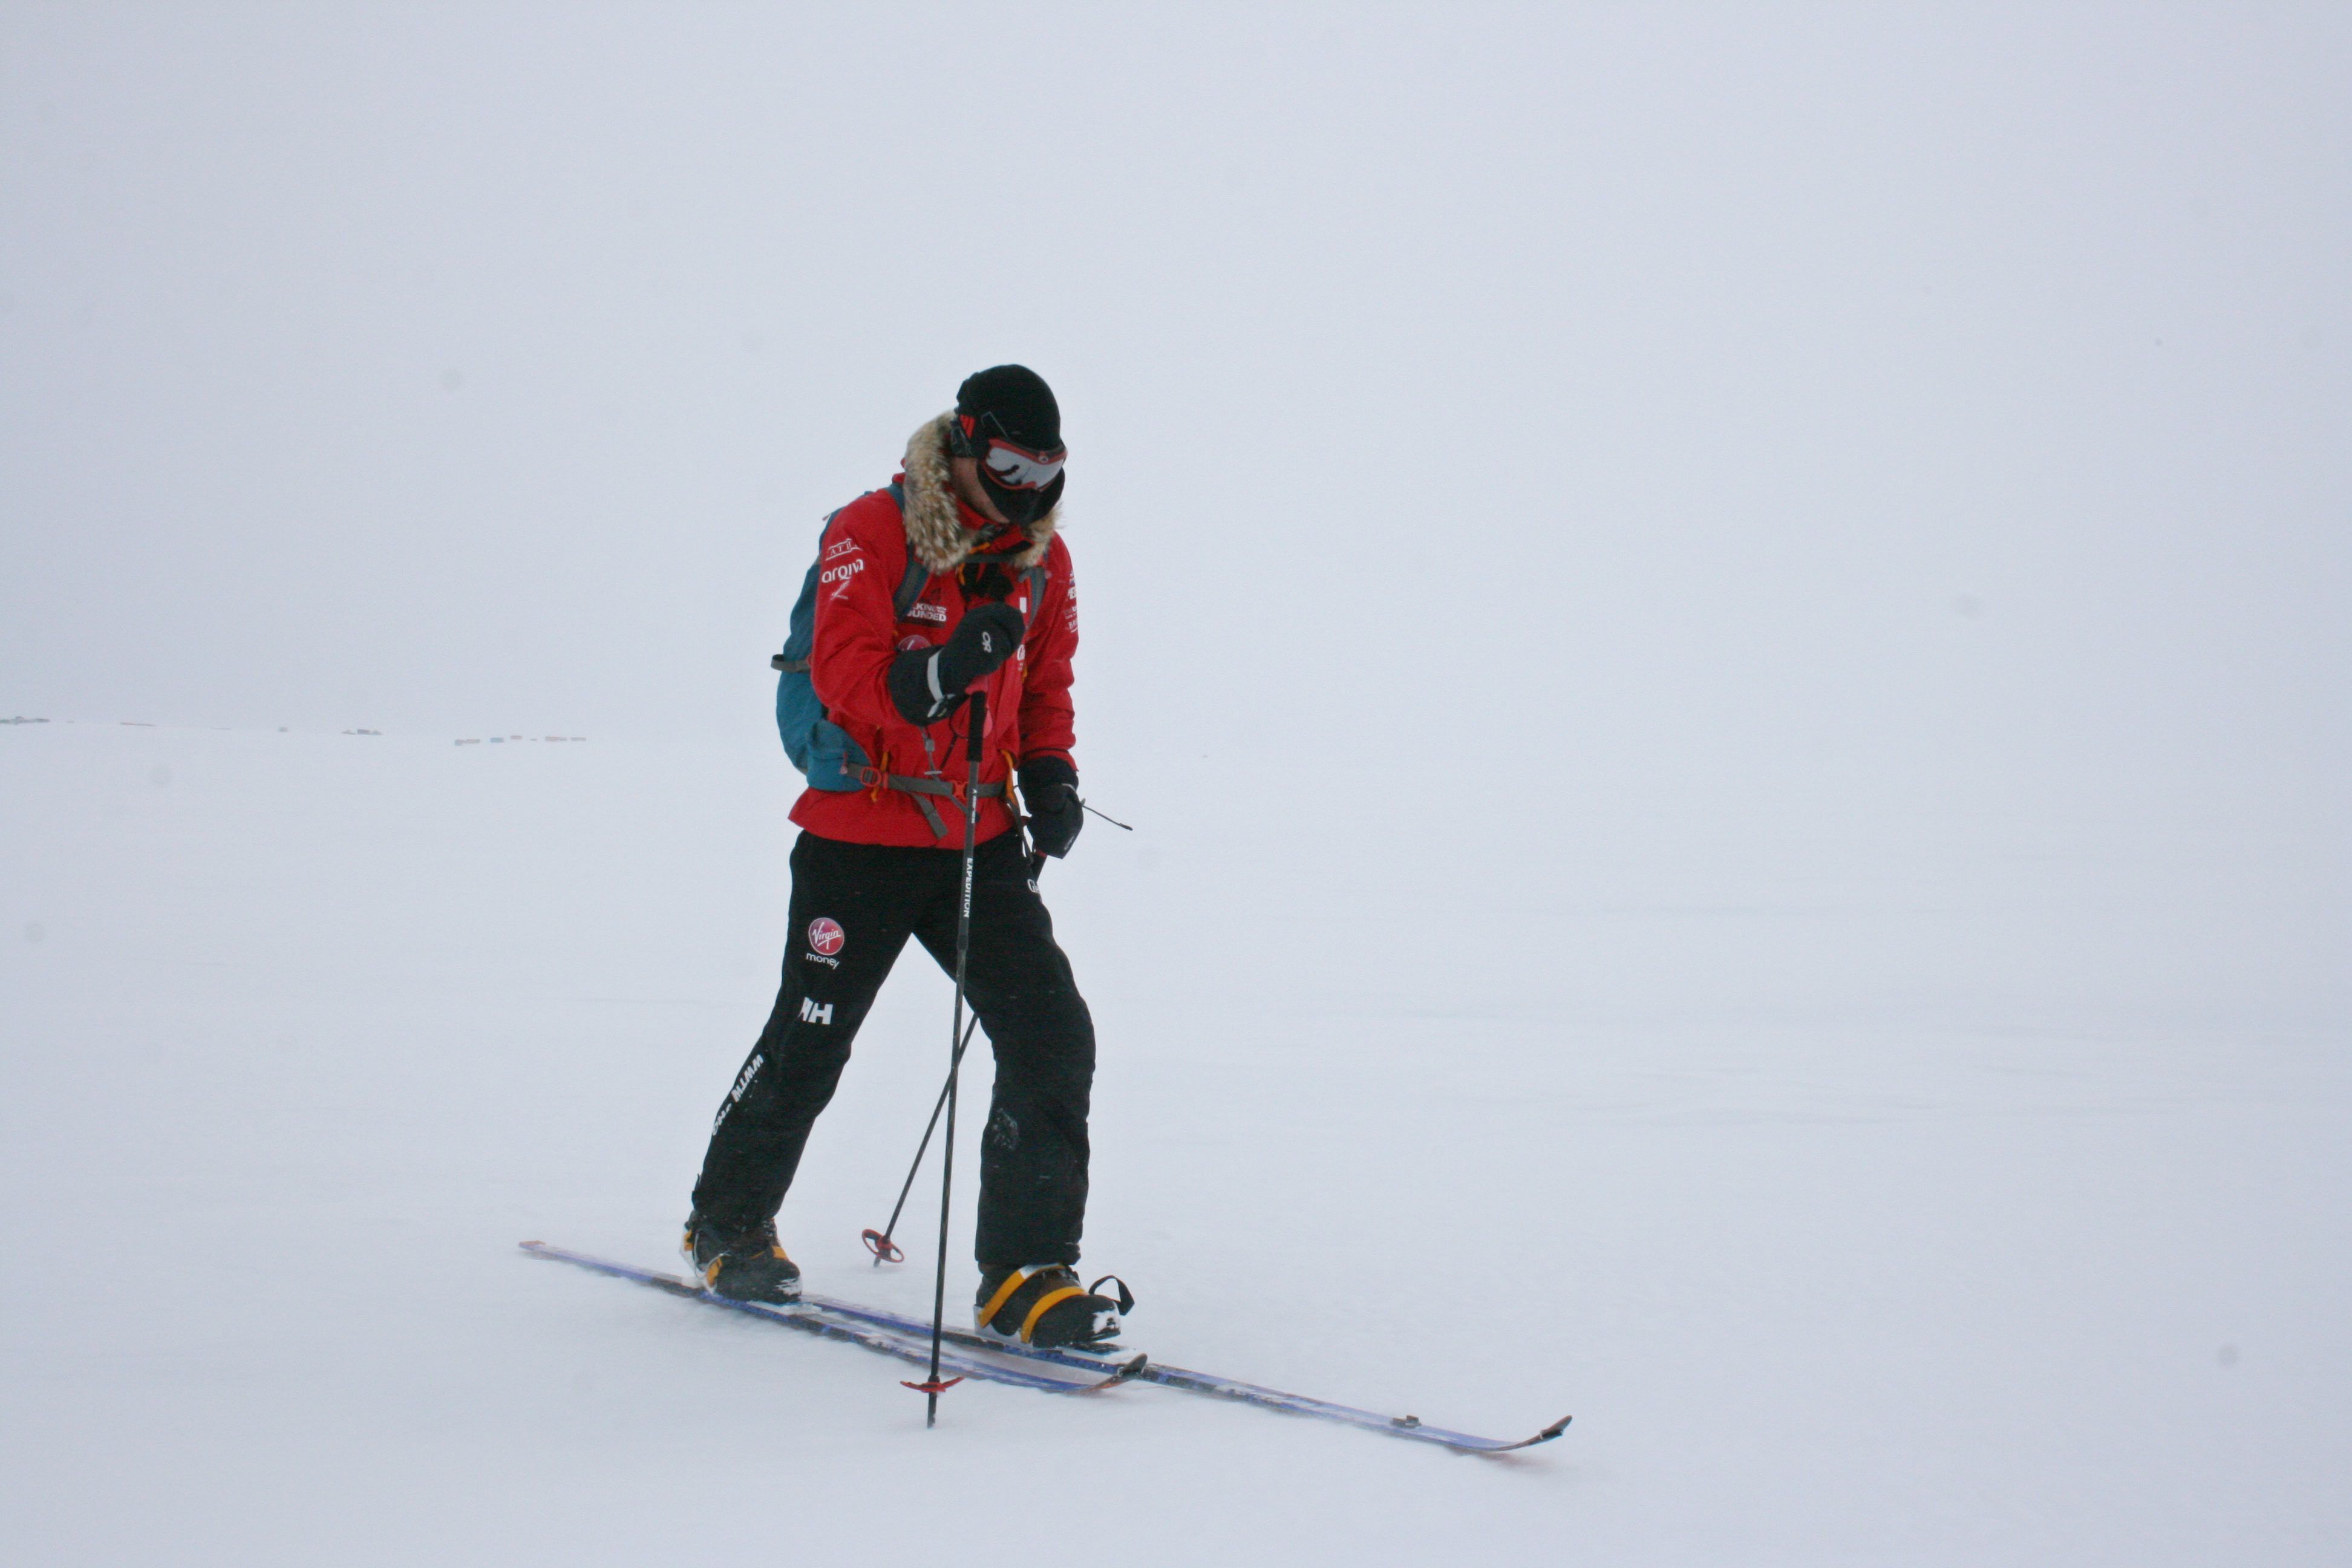 Man erkennt ihn nicht unter der Skibrille, aber das ist wirklich Prinz Harry! Beim Wettrennen für die Organisation Walking With The Wounded lief Prinz Harry auf Skiern zum Südpol, um Geld für den guten Zweck zu sammeln.